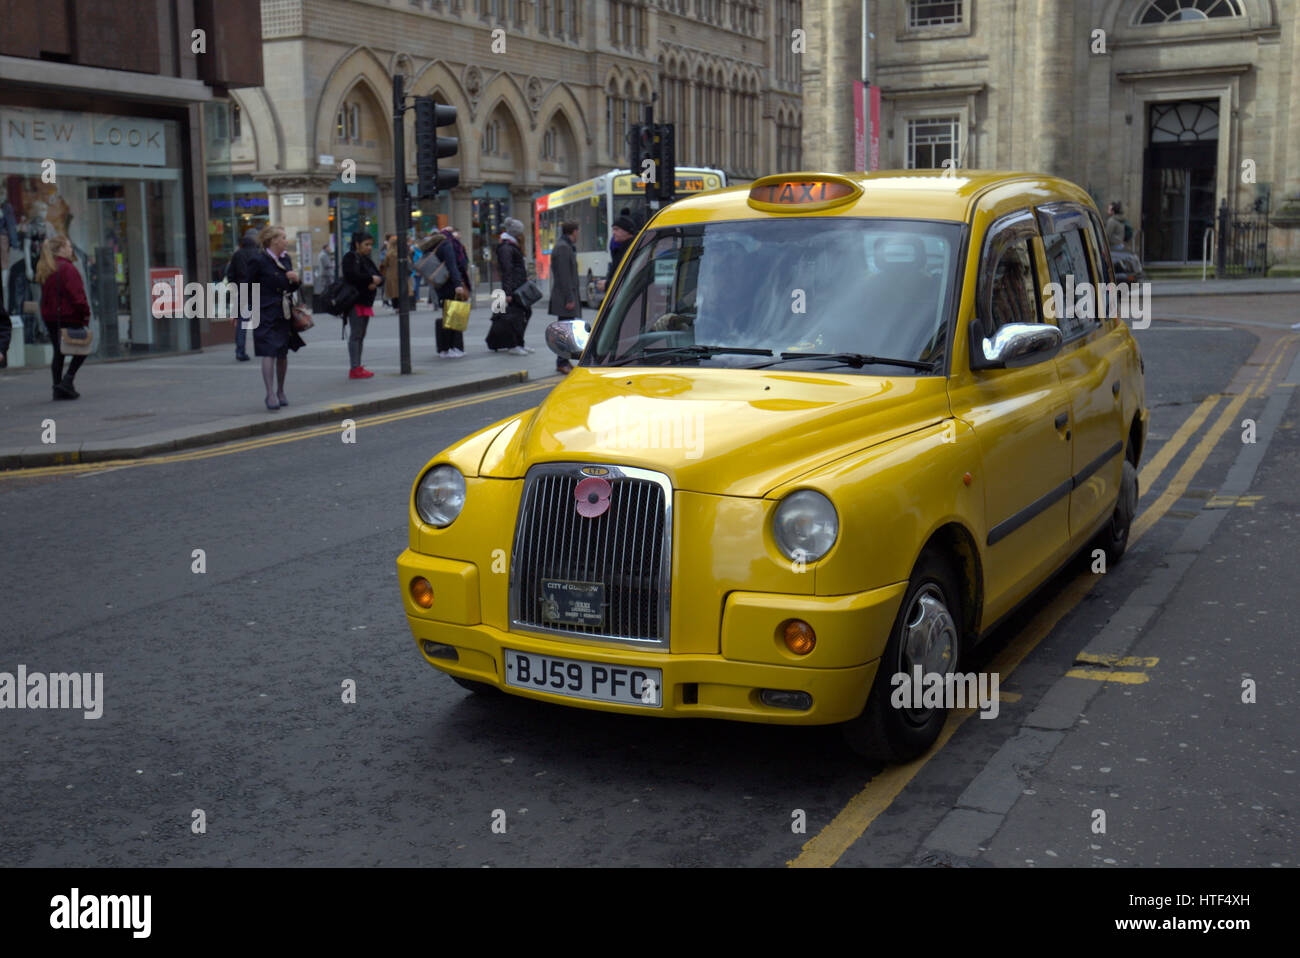 yellow British taxi on Glasgow street Stock Photo